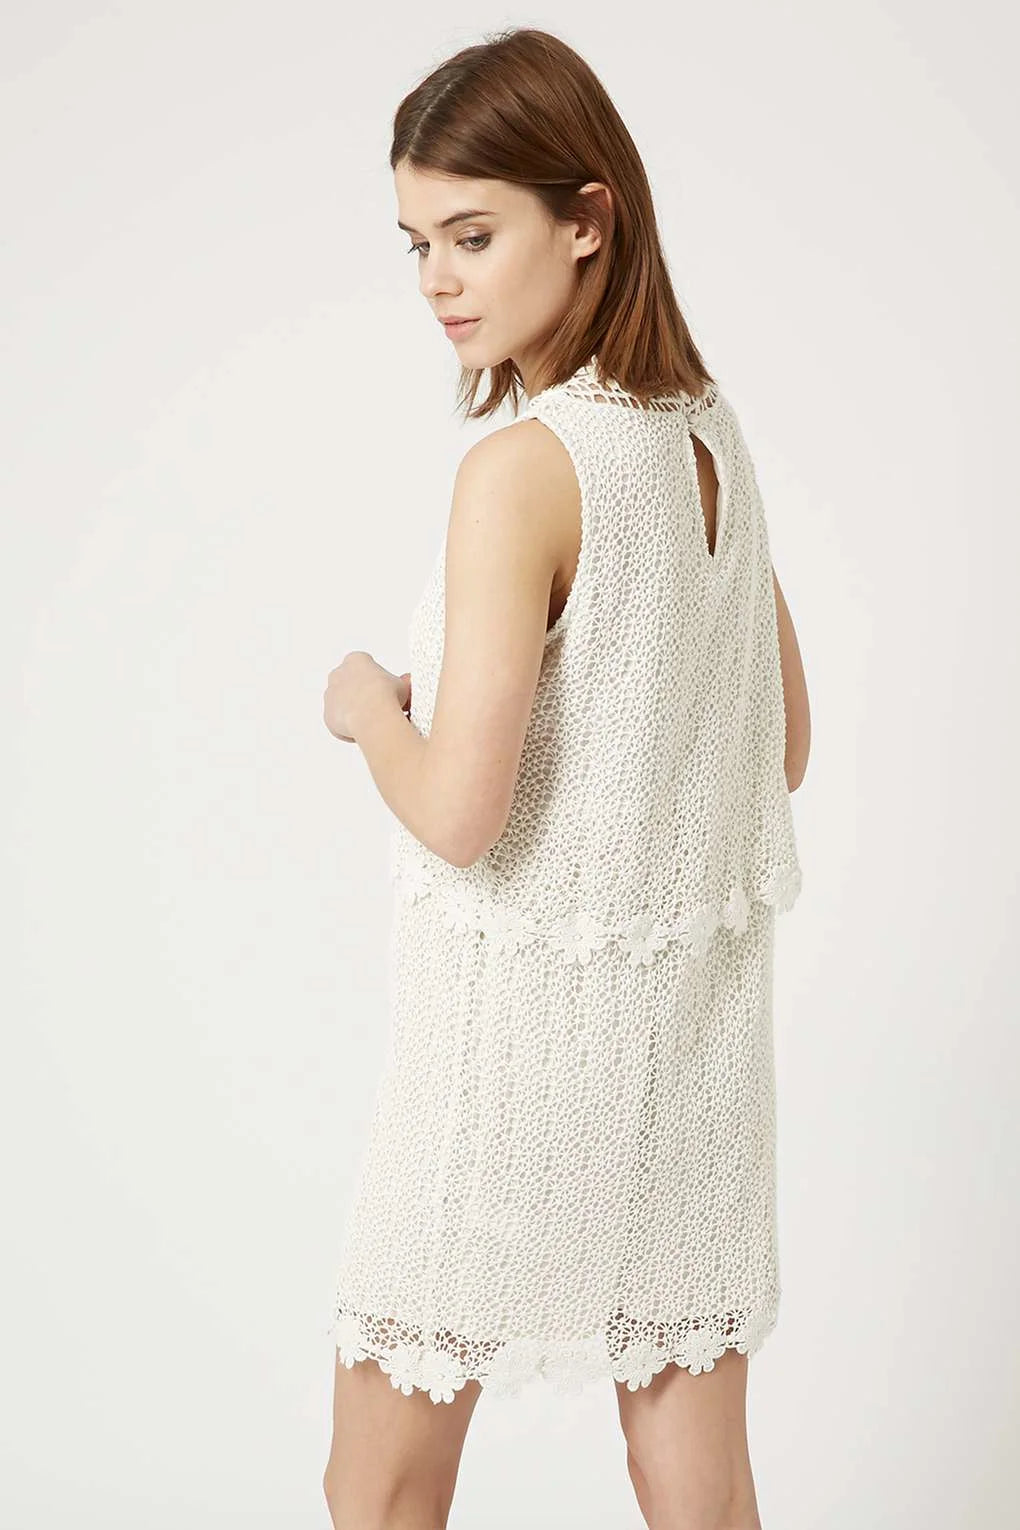 Topshop Sleeveless Crochet Layer Dress